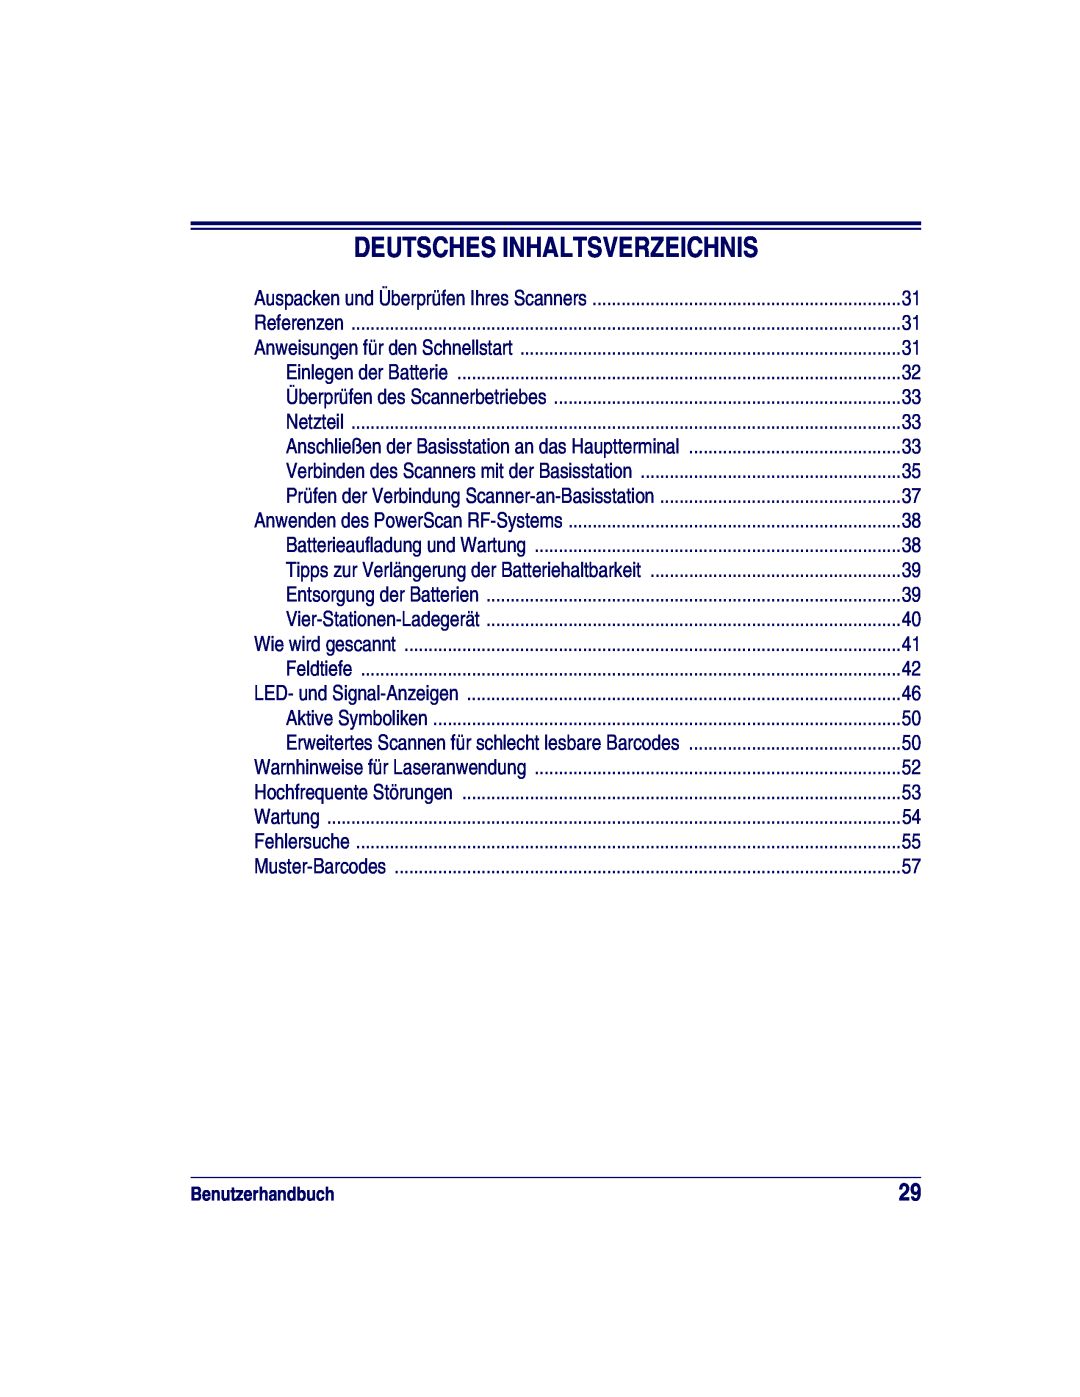 Datalogic Scanning XLR, SR, HD manual Deutsches Inhaltsverzeichnis, Benutzerhandbuch 